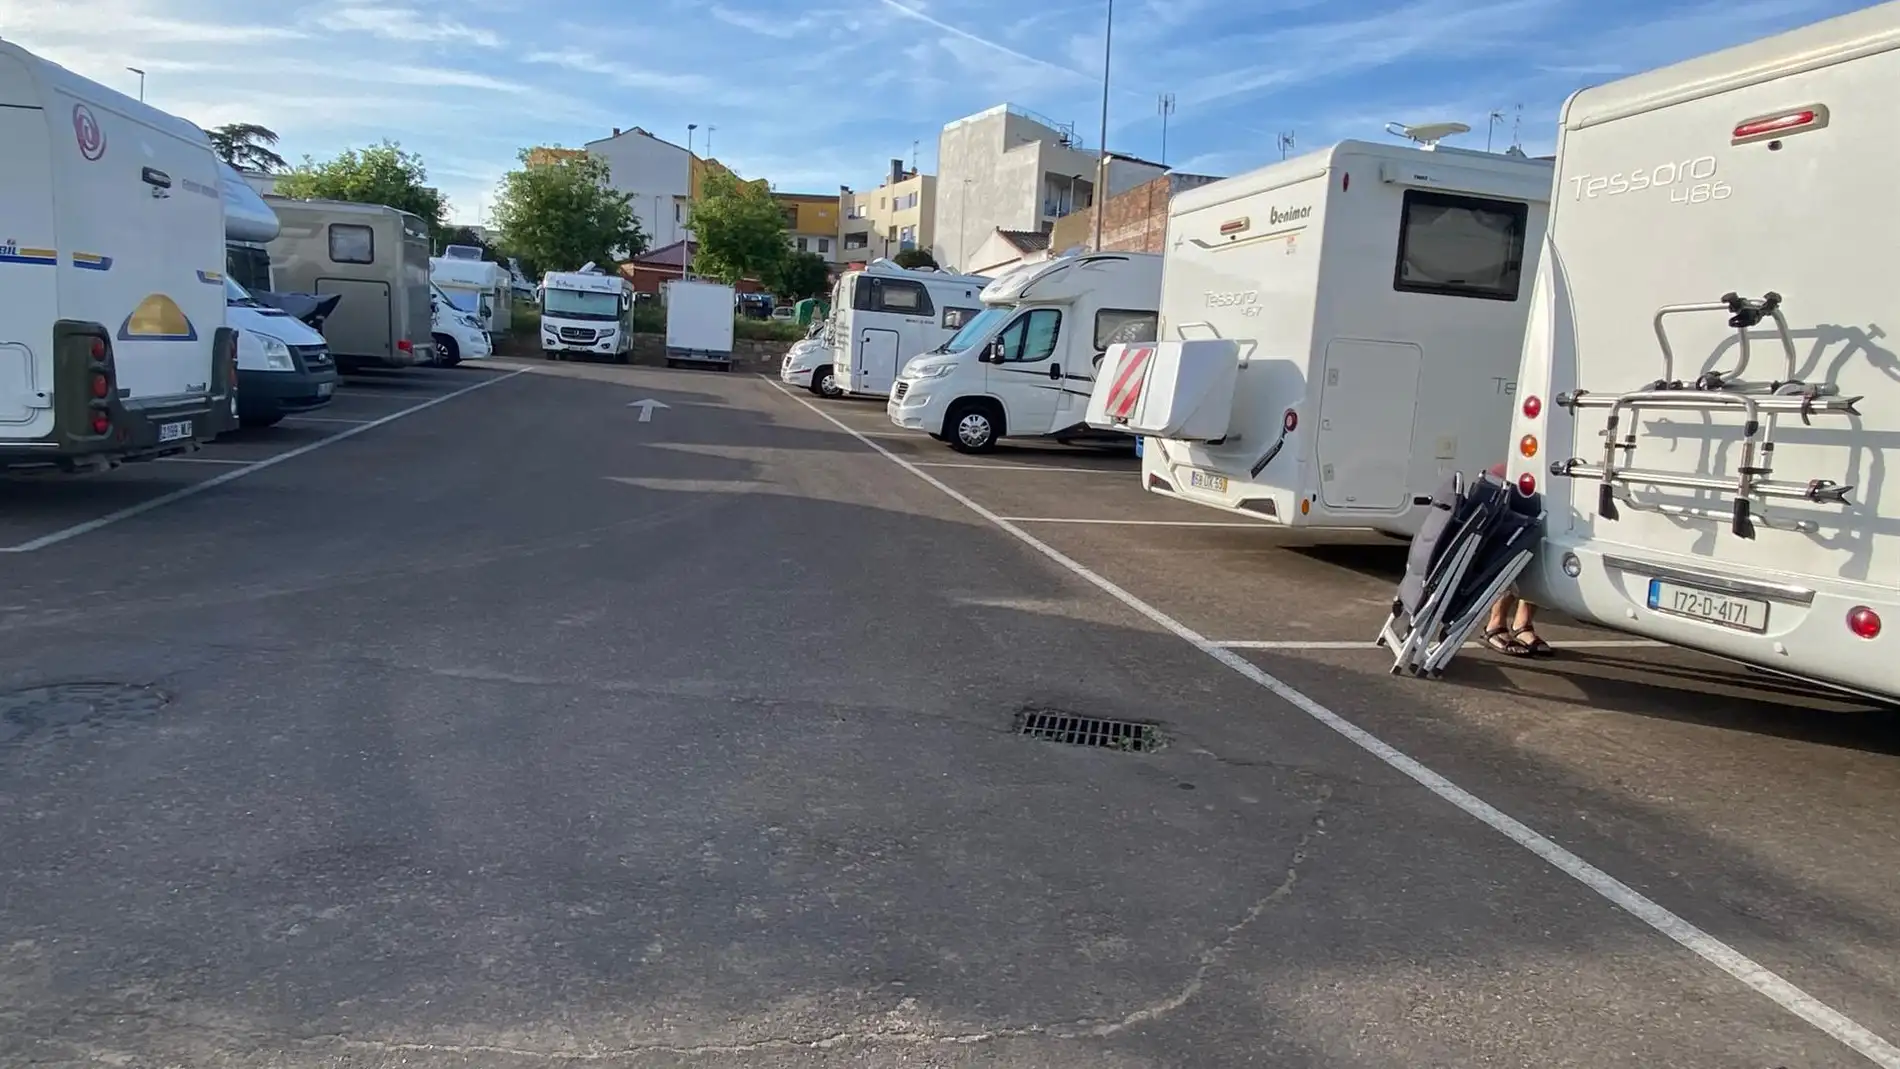 El PSOE de Badajoz pide una zona "nueva y moderna" para caravanas en la barriada de San Roque